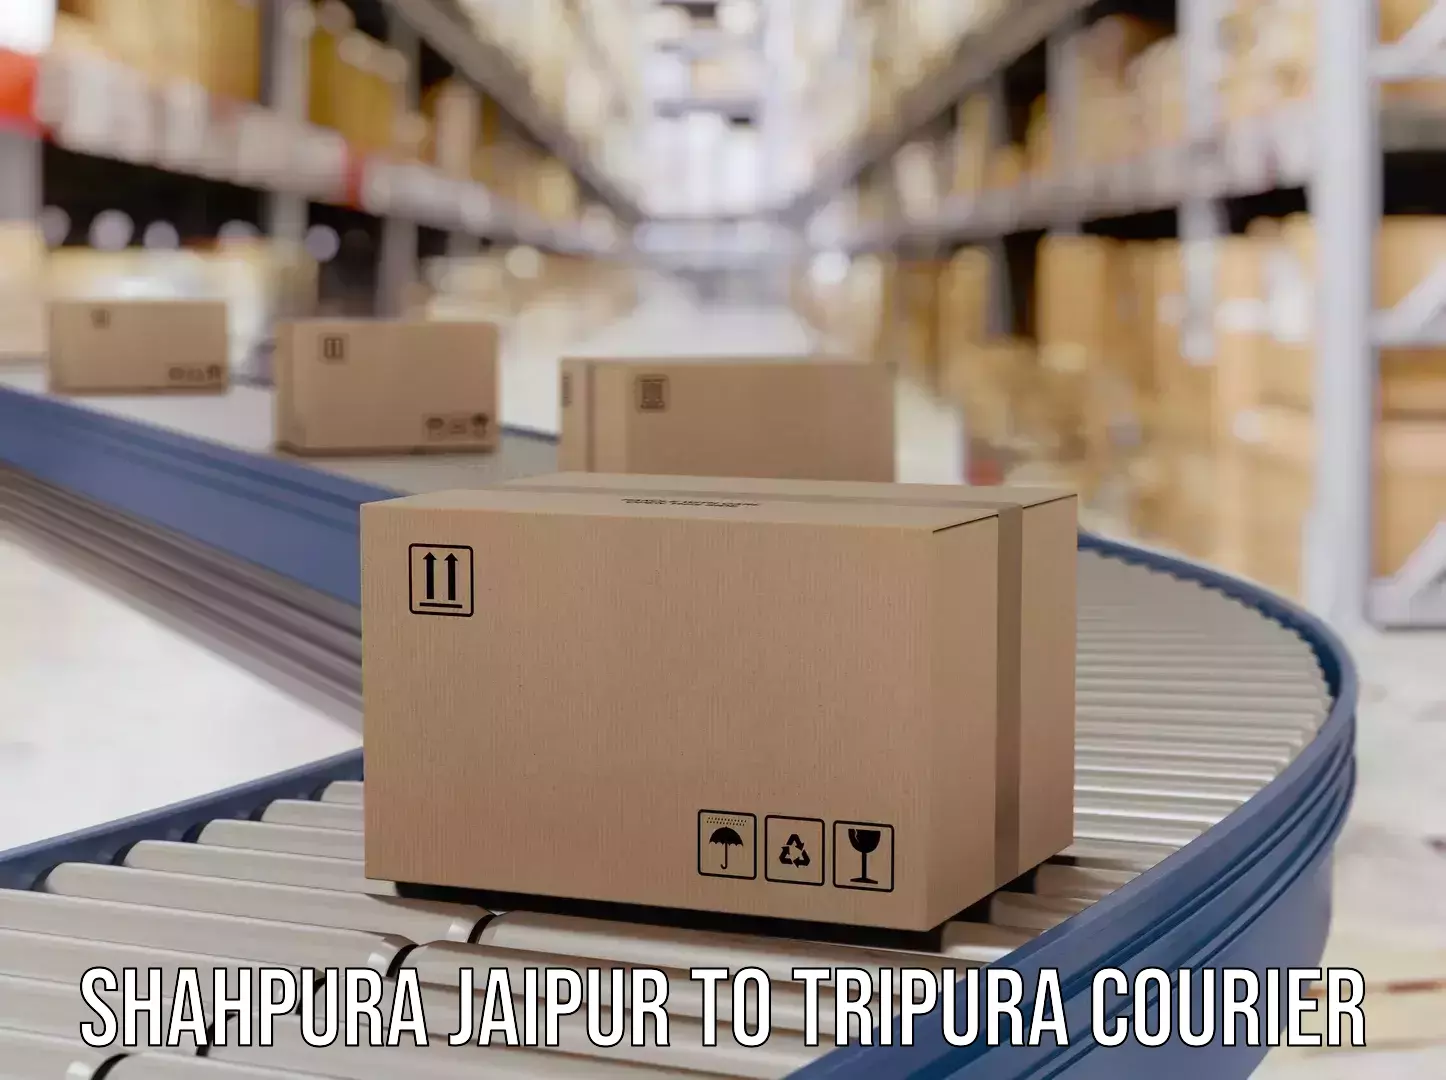 Affordable parcel service Shahpura Jaipur to Tripura